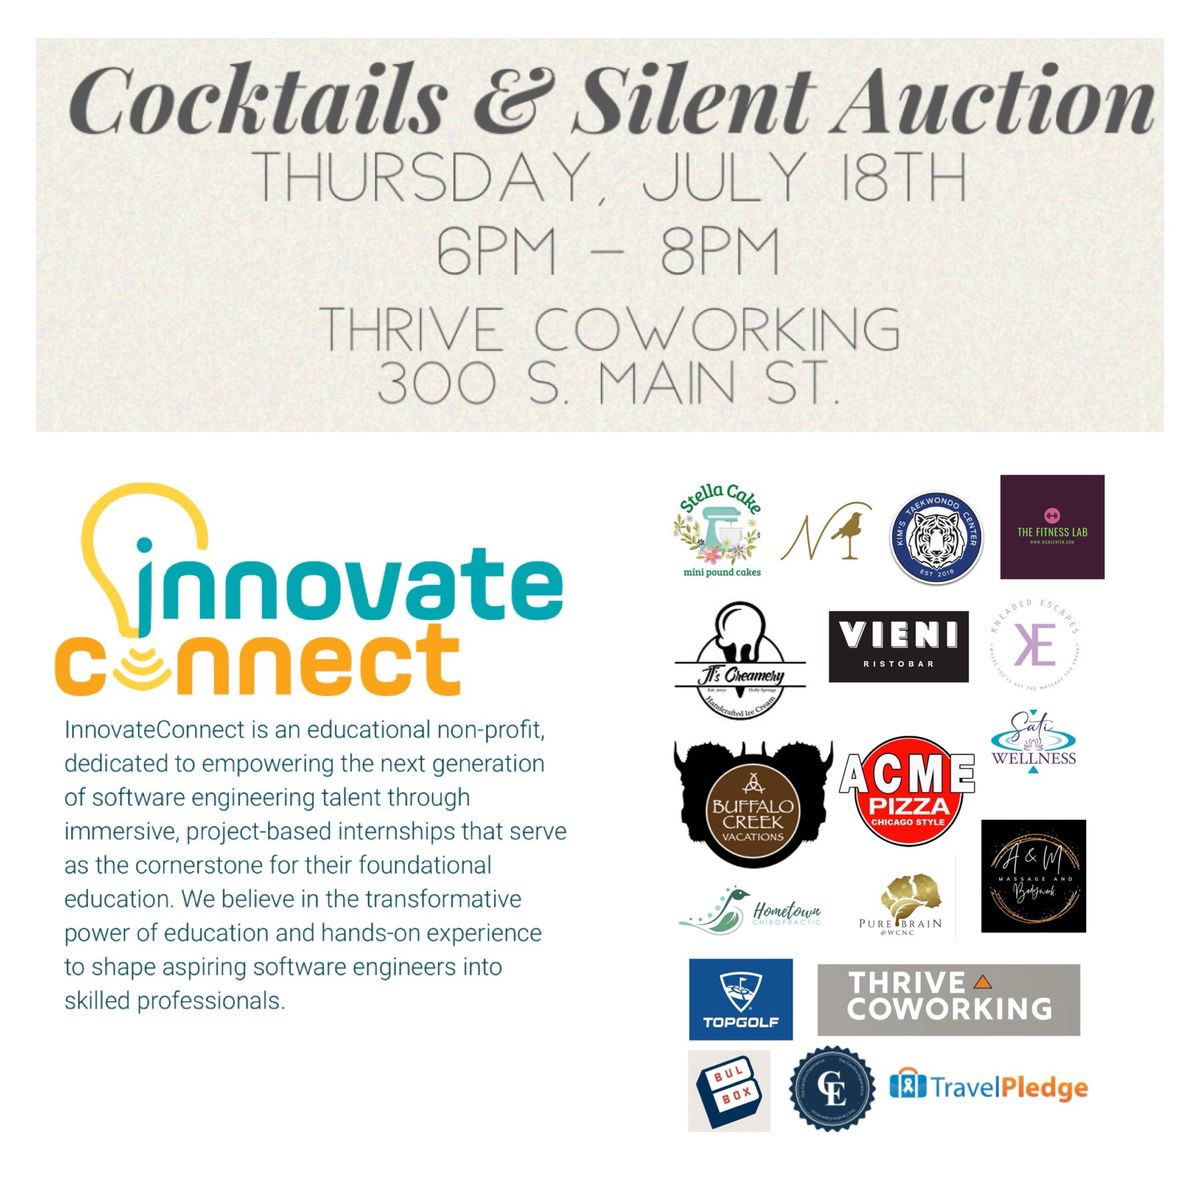 Cocktails & Silent Auction